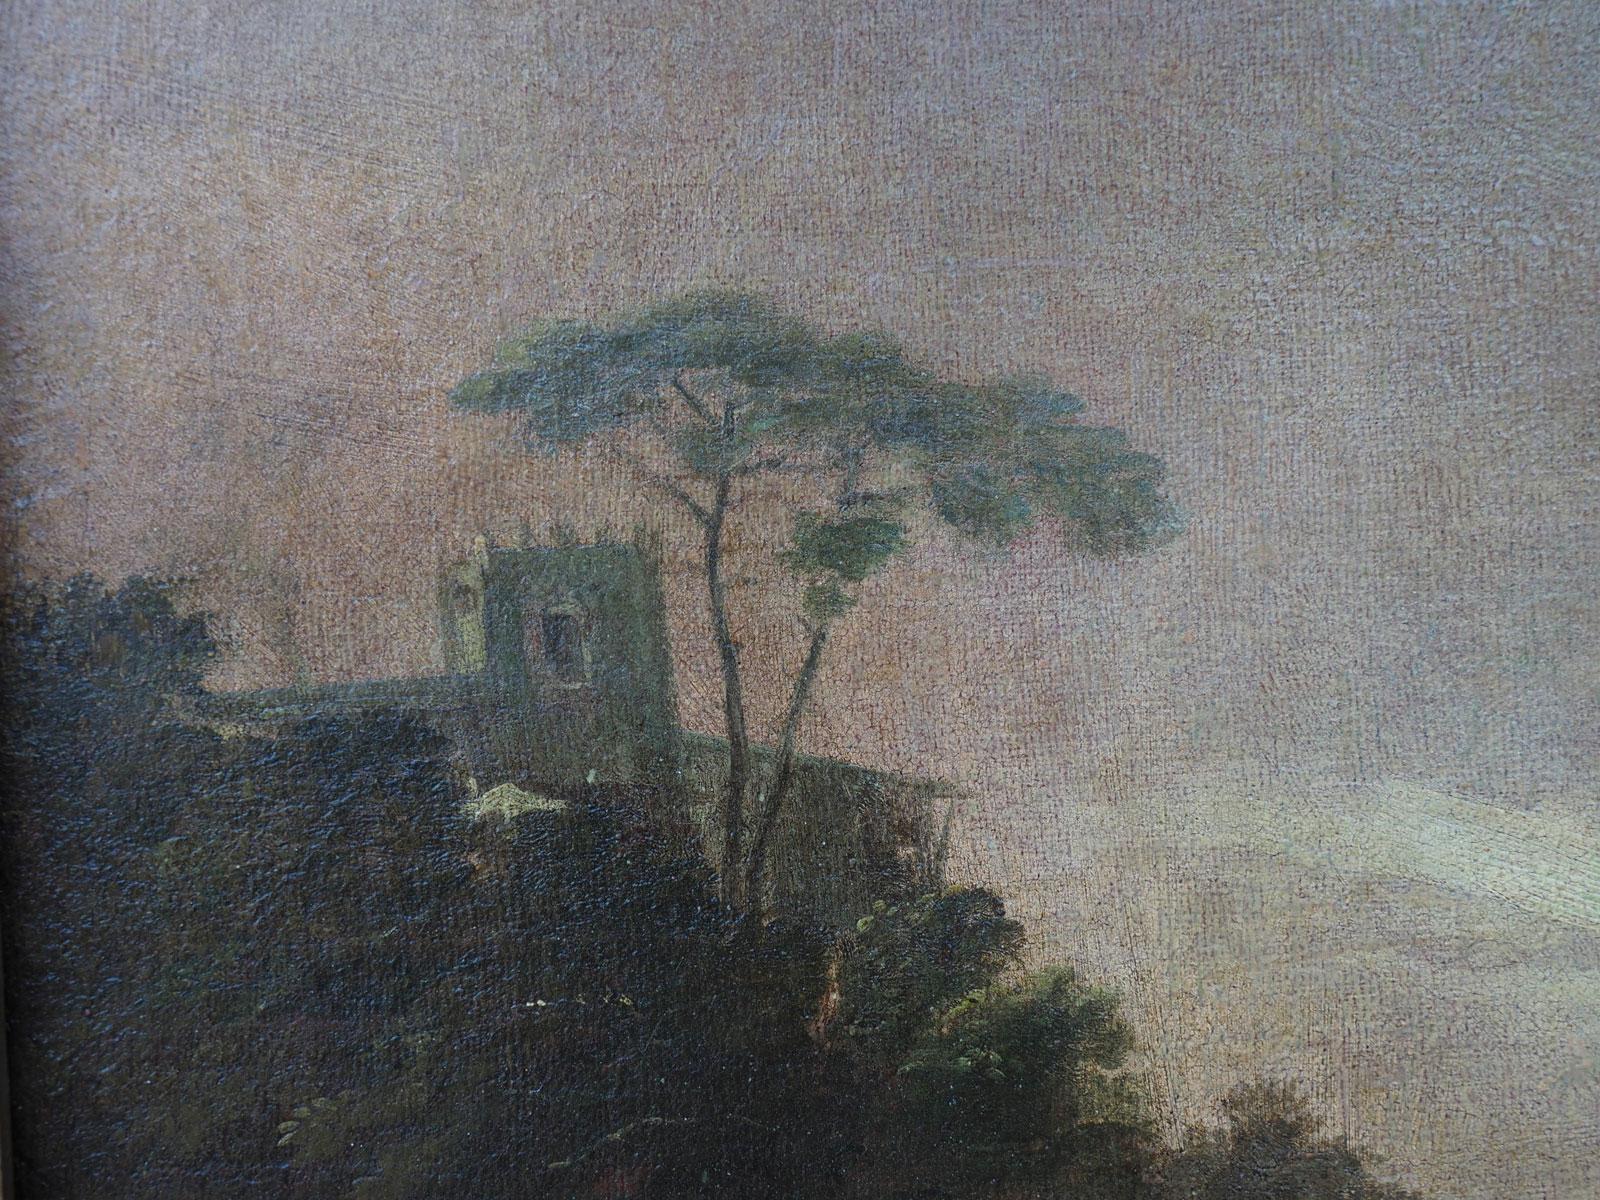 Landschaft in der Abenddämmerung mit Figuren von Marco Ricci's Nachfolger - XVIII Jahrhundert
Dieses Ölgemälde auf Leinwand stellt eine typische venezianische Landschaft in der Abenddämmerung dar. 
Die chromatische Wahl, nämlich die Vorherrschaft